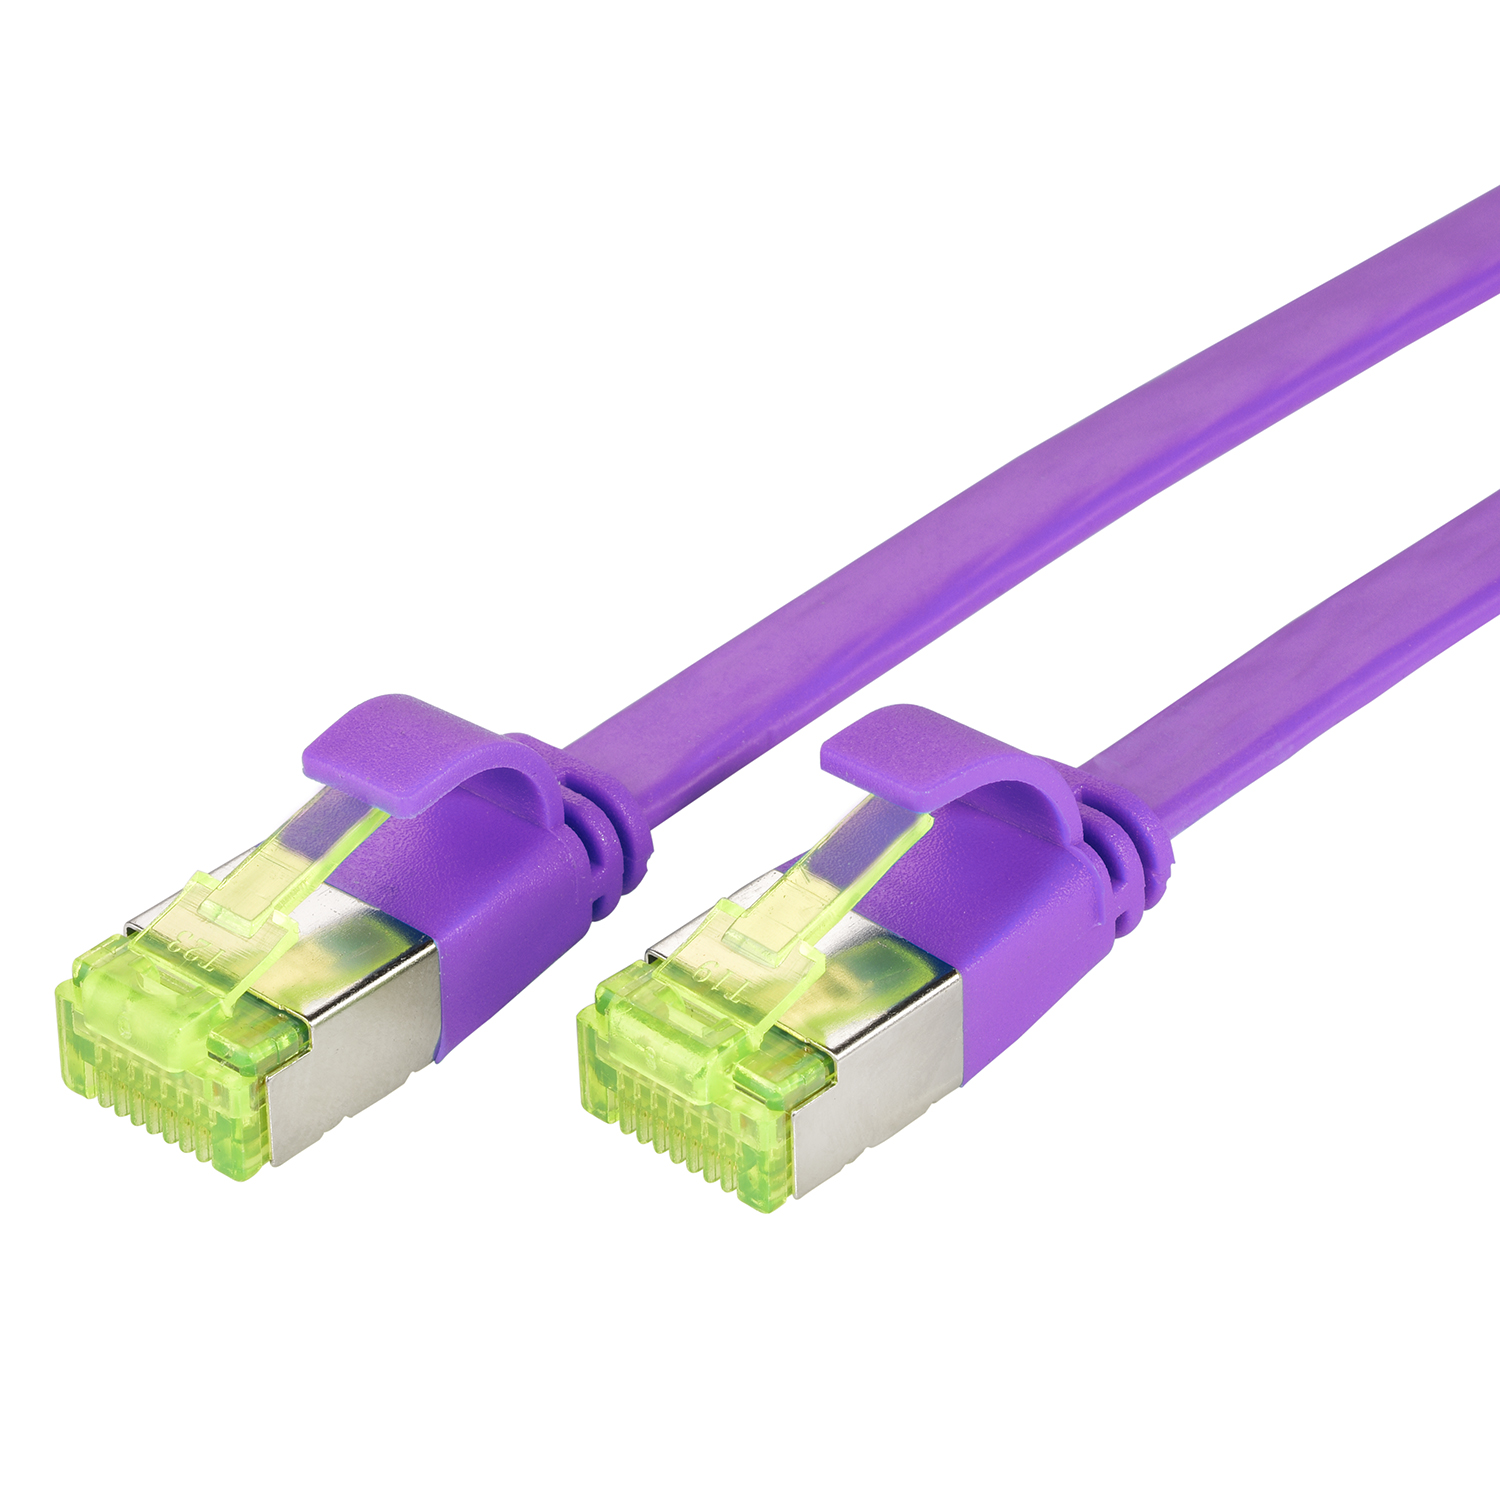 TPFNET 0,25m Patchkabel Netzwerkkabel, Flachkabel GBit, violett, 10 / 0,25 m U/FTP